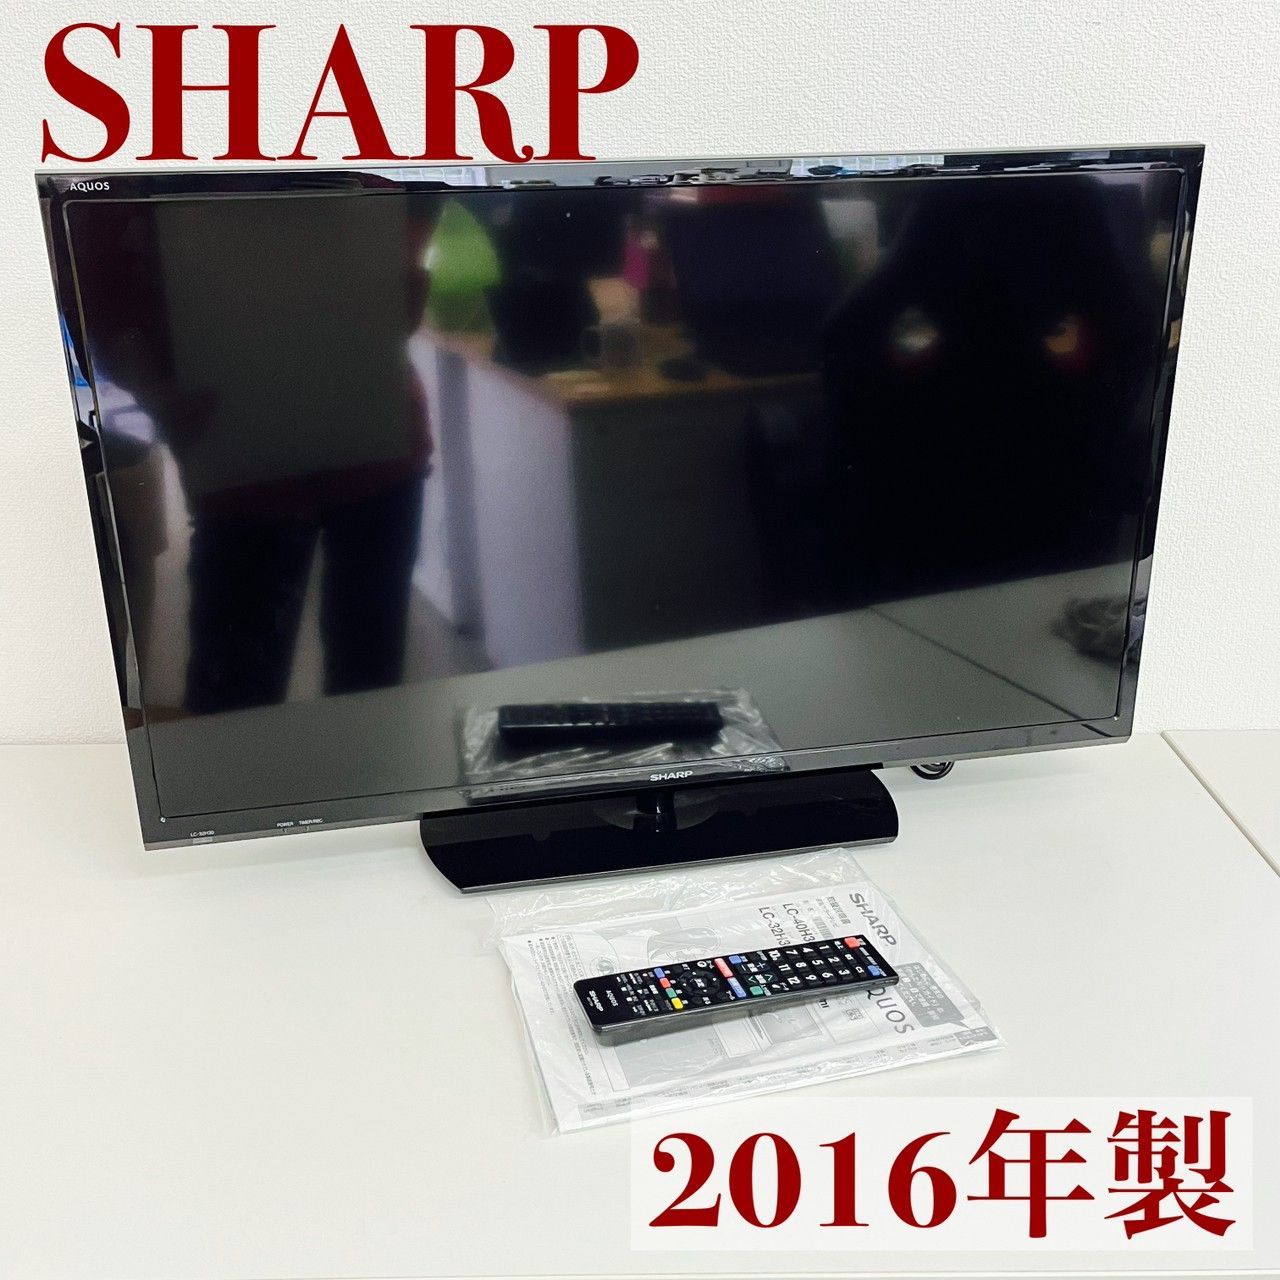 SHARP 液晶カラーテレビ  LC-32H30 2016年製